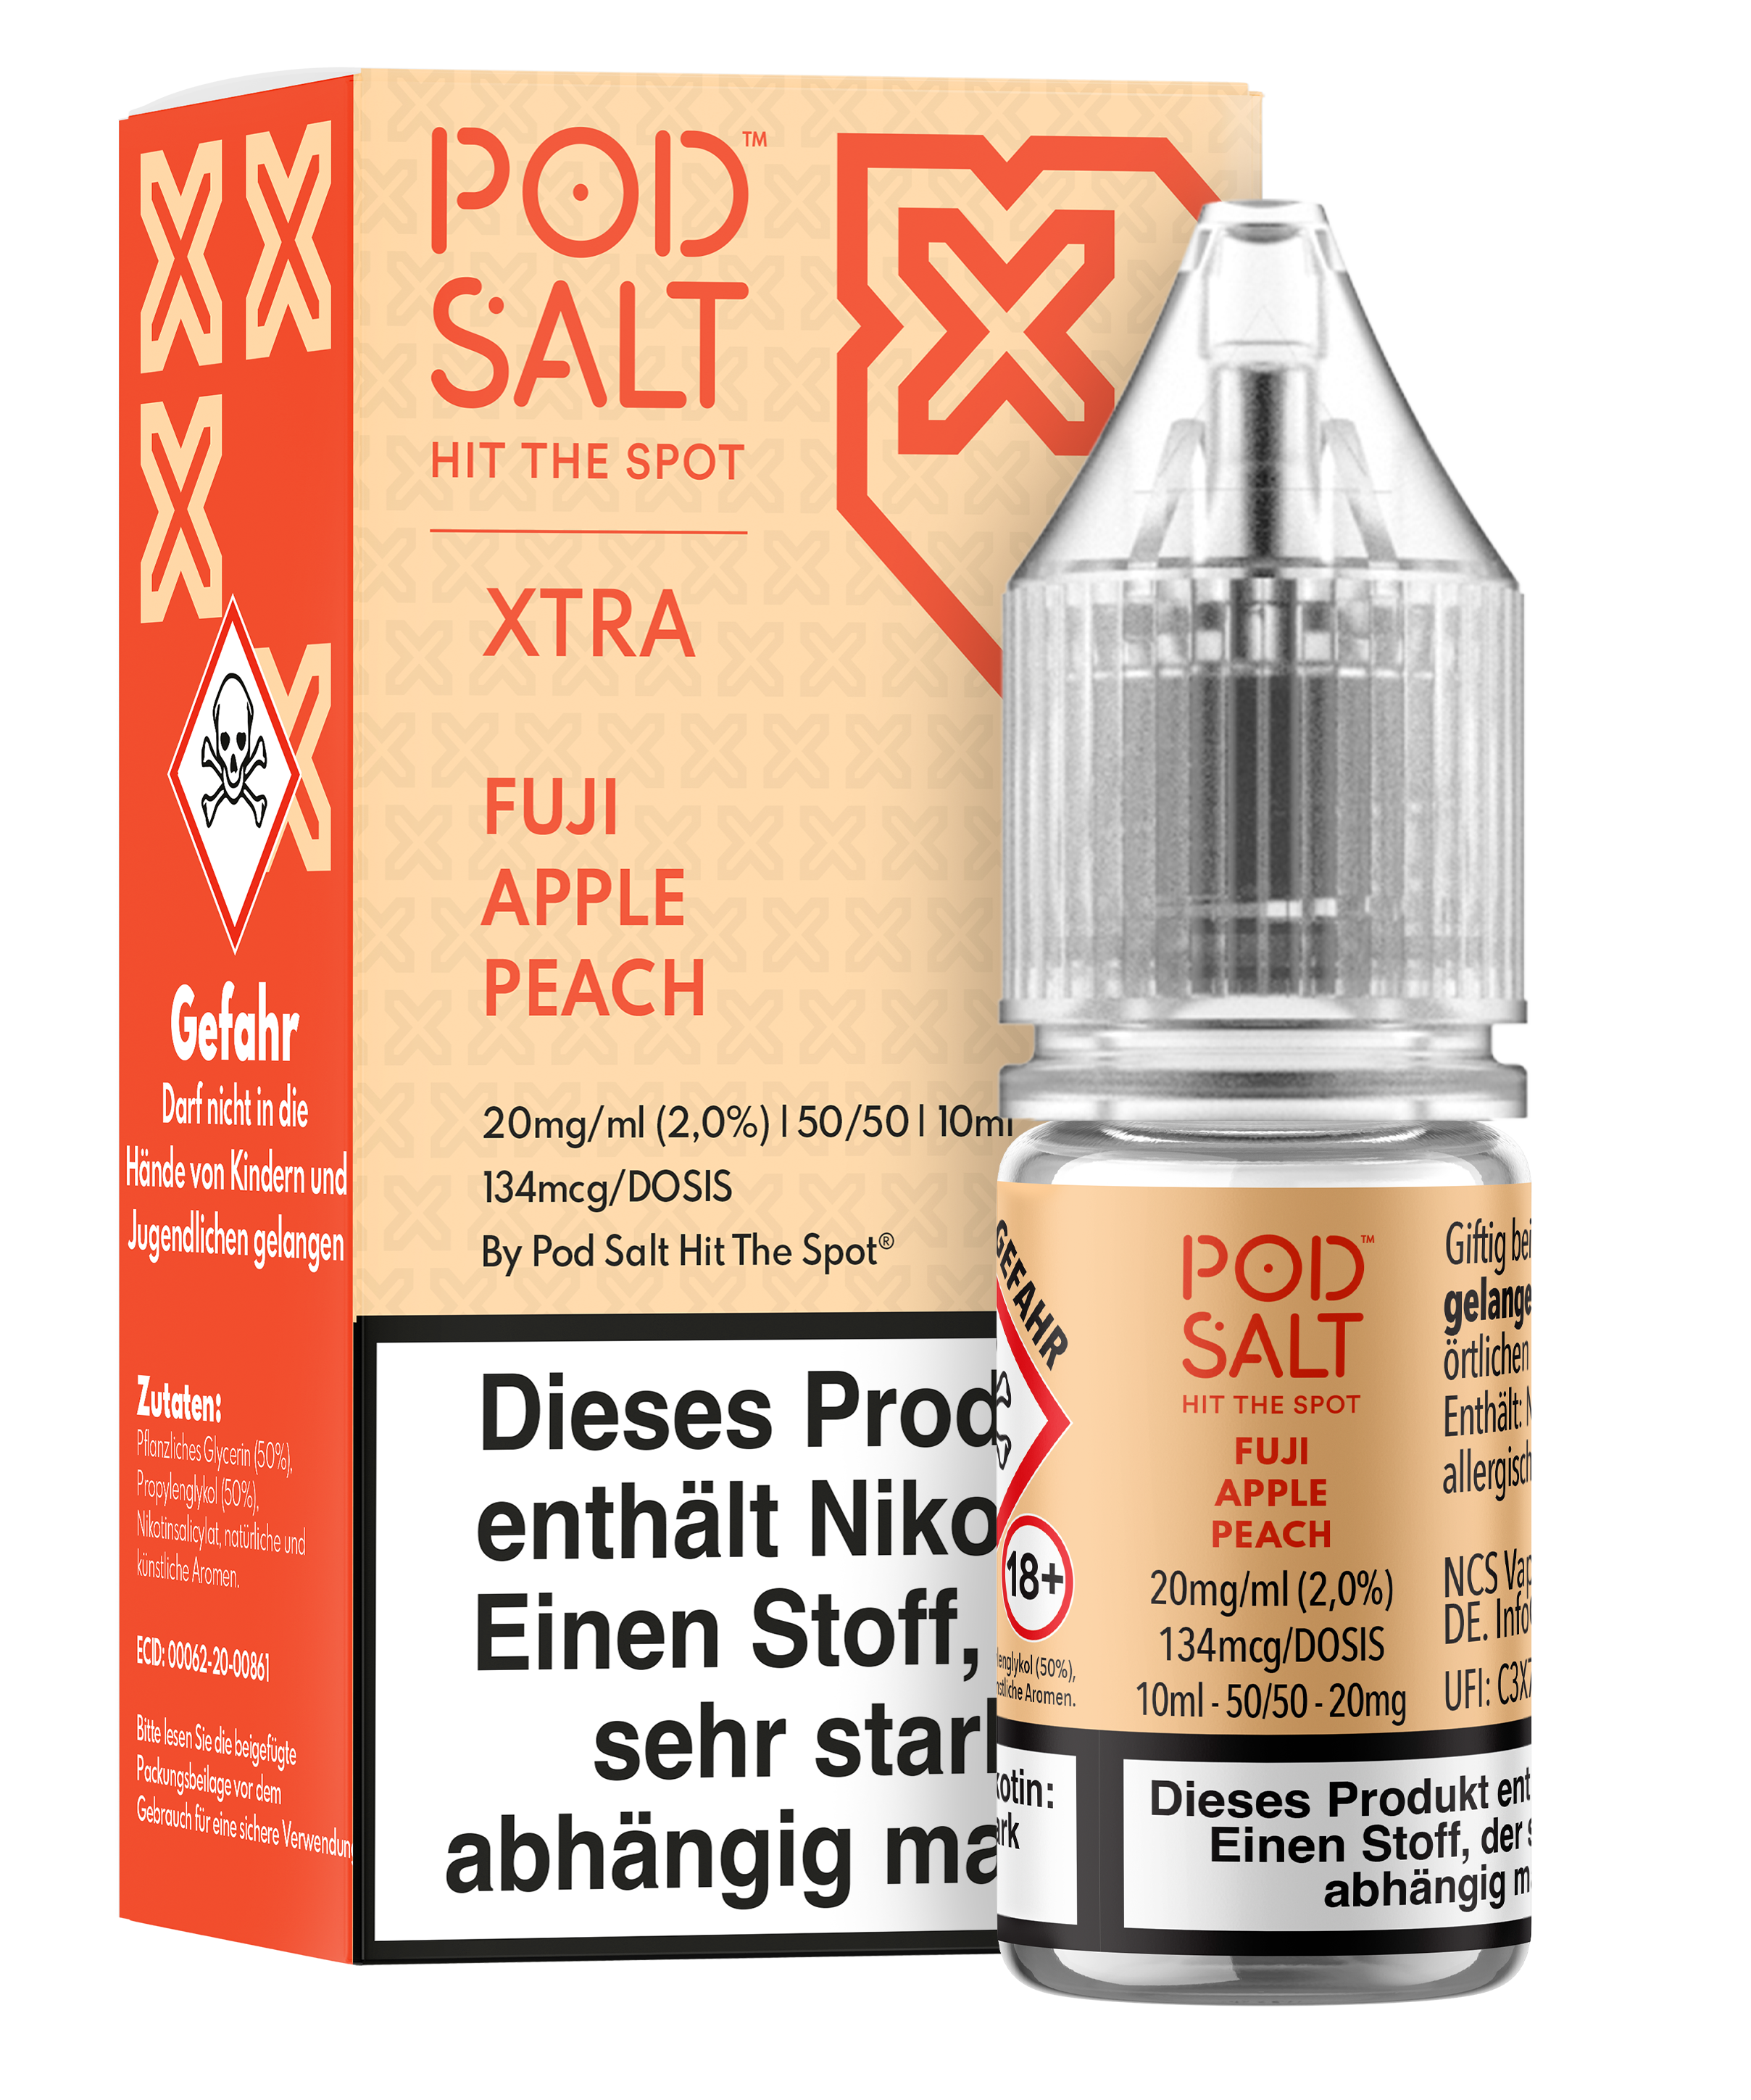 Pod Salt Xtra - Fuji Apple Peach 10 ml